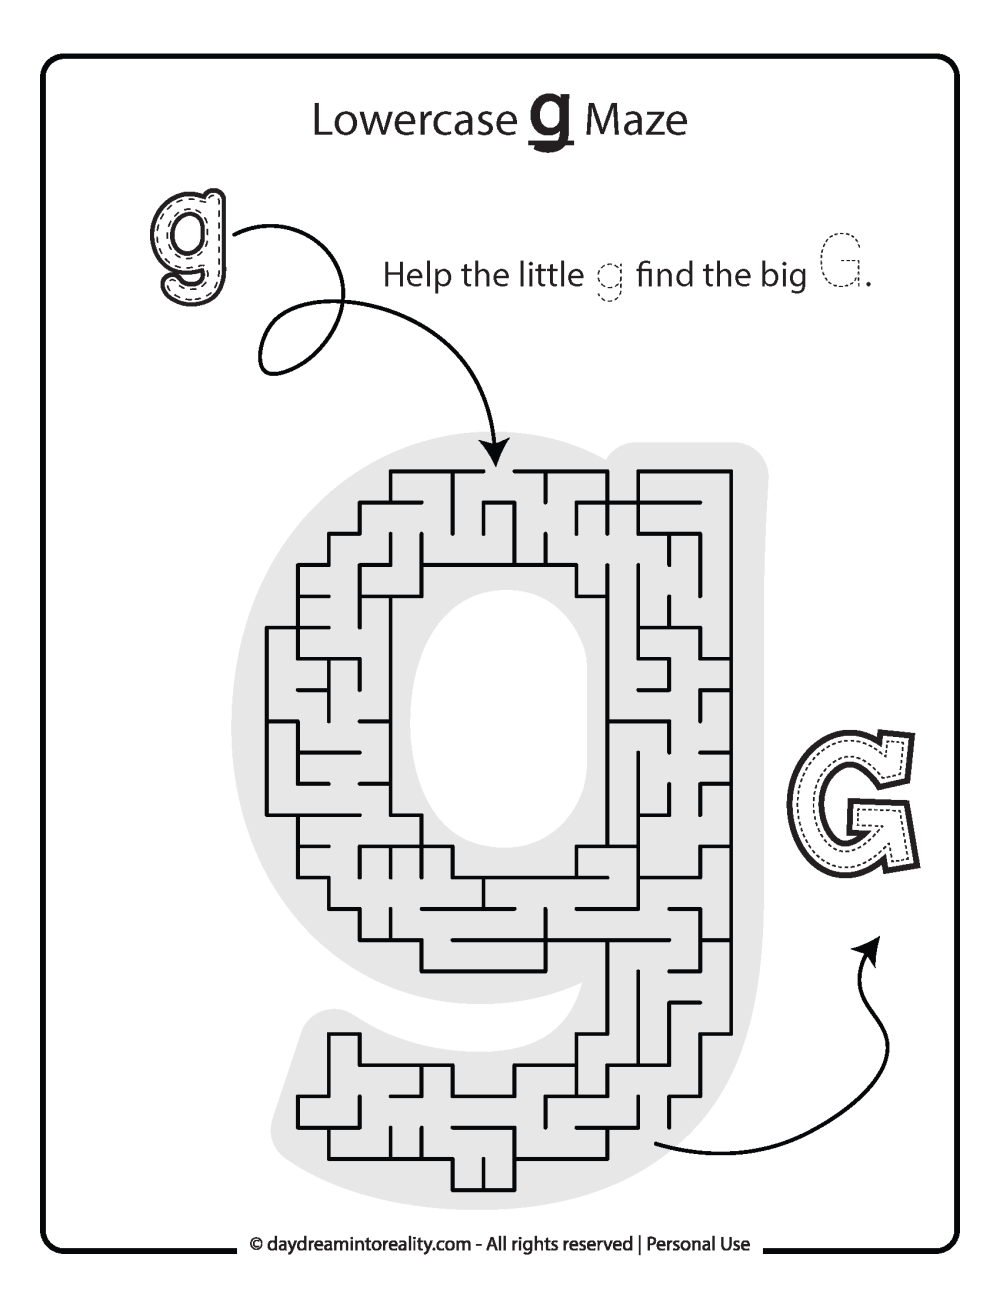 Lowercase "g" Maze Free Printable